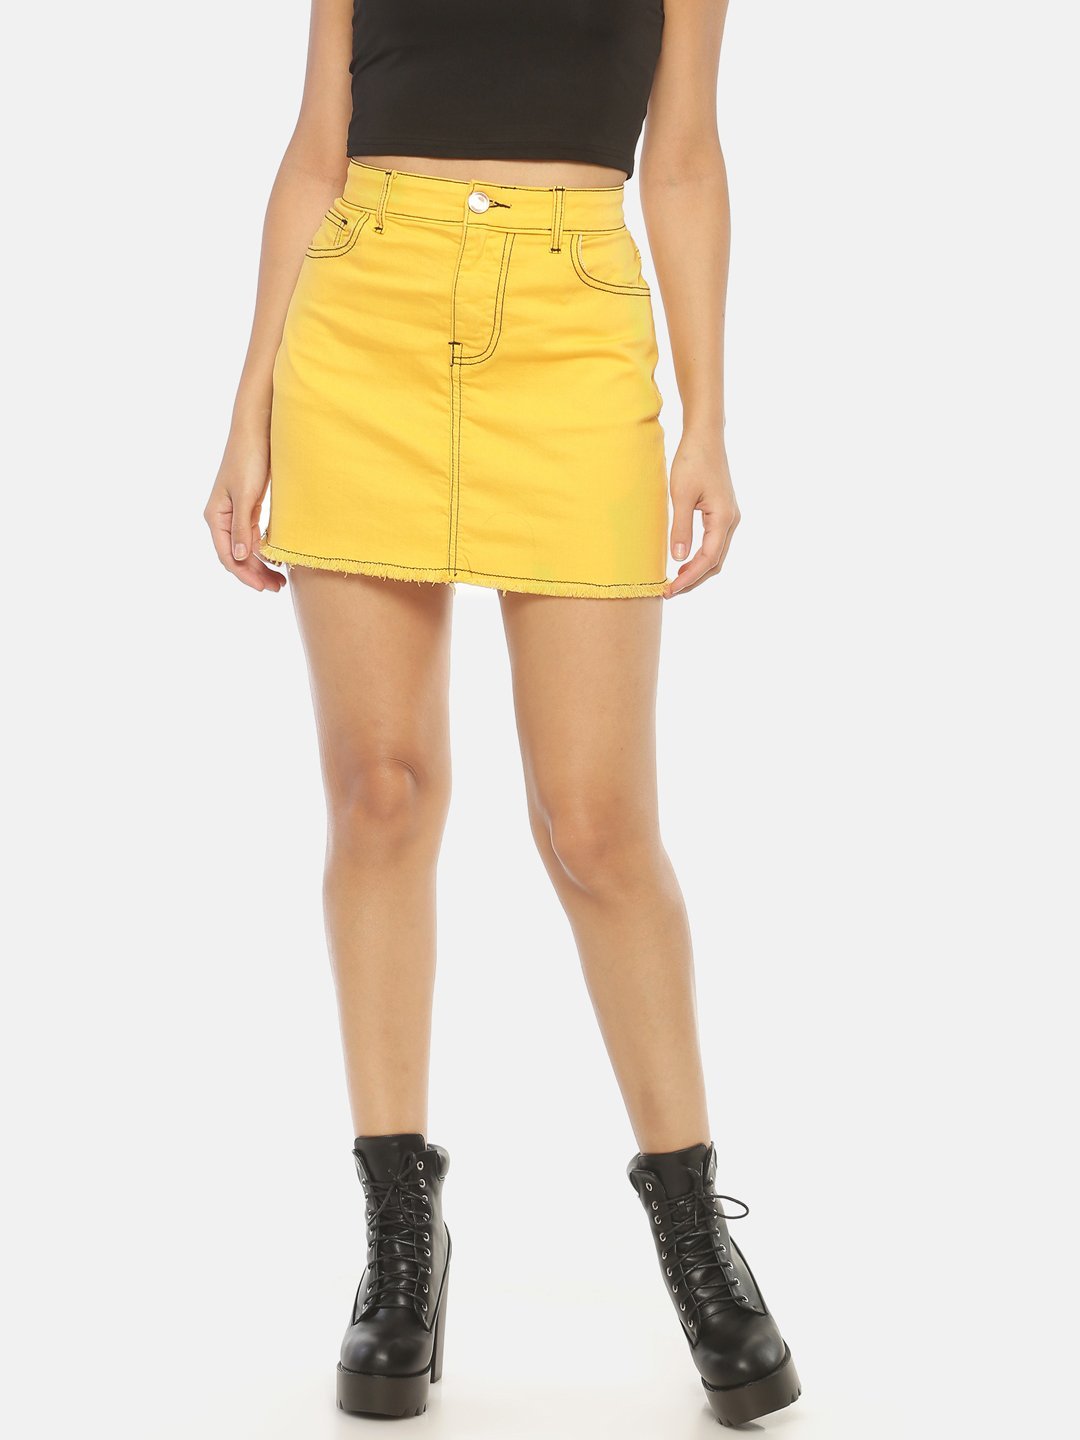 IS.U Yellow Denim Skirt